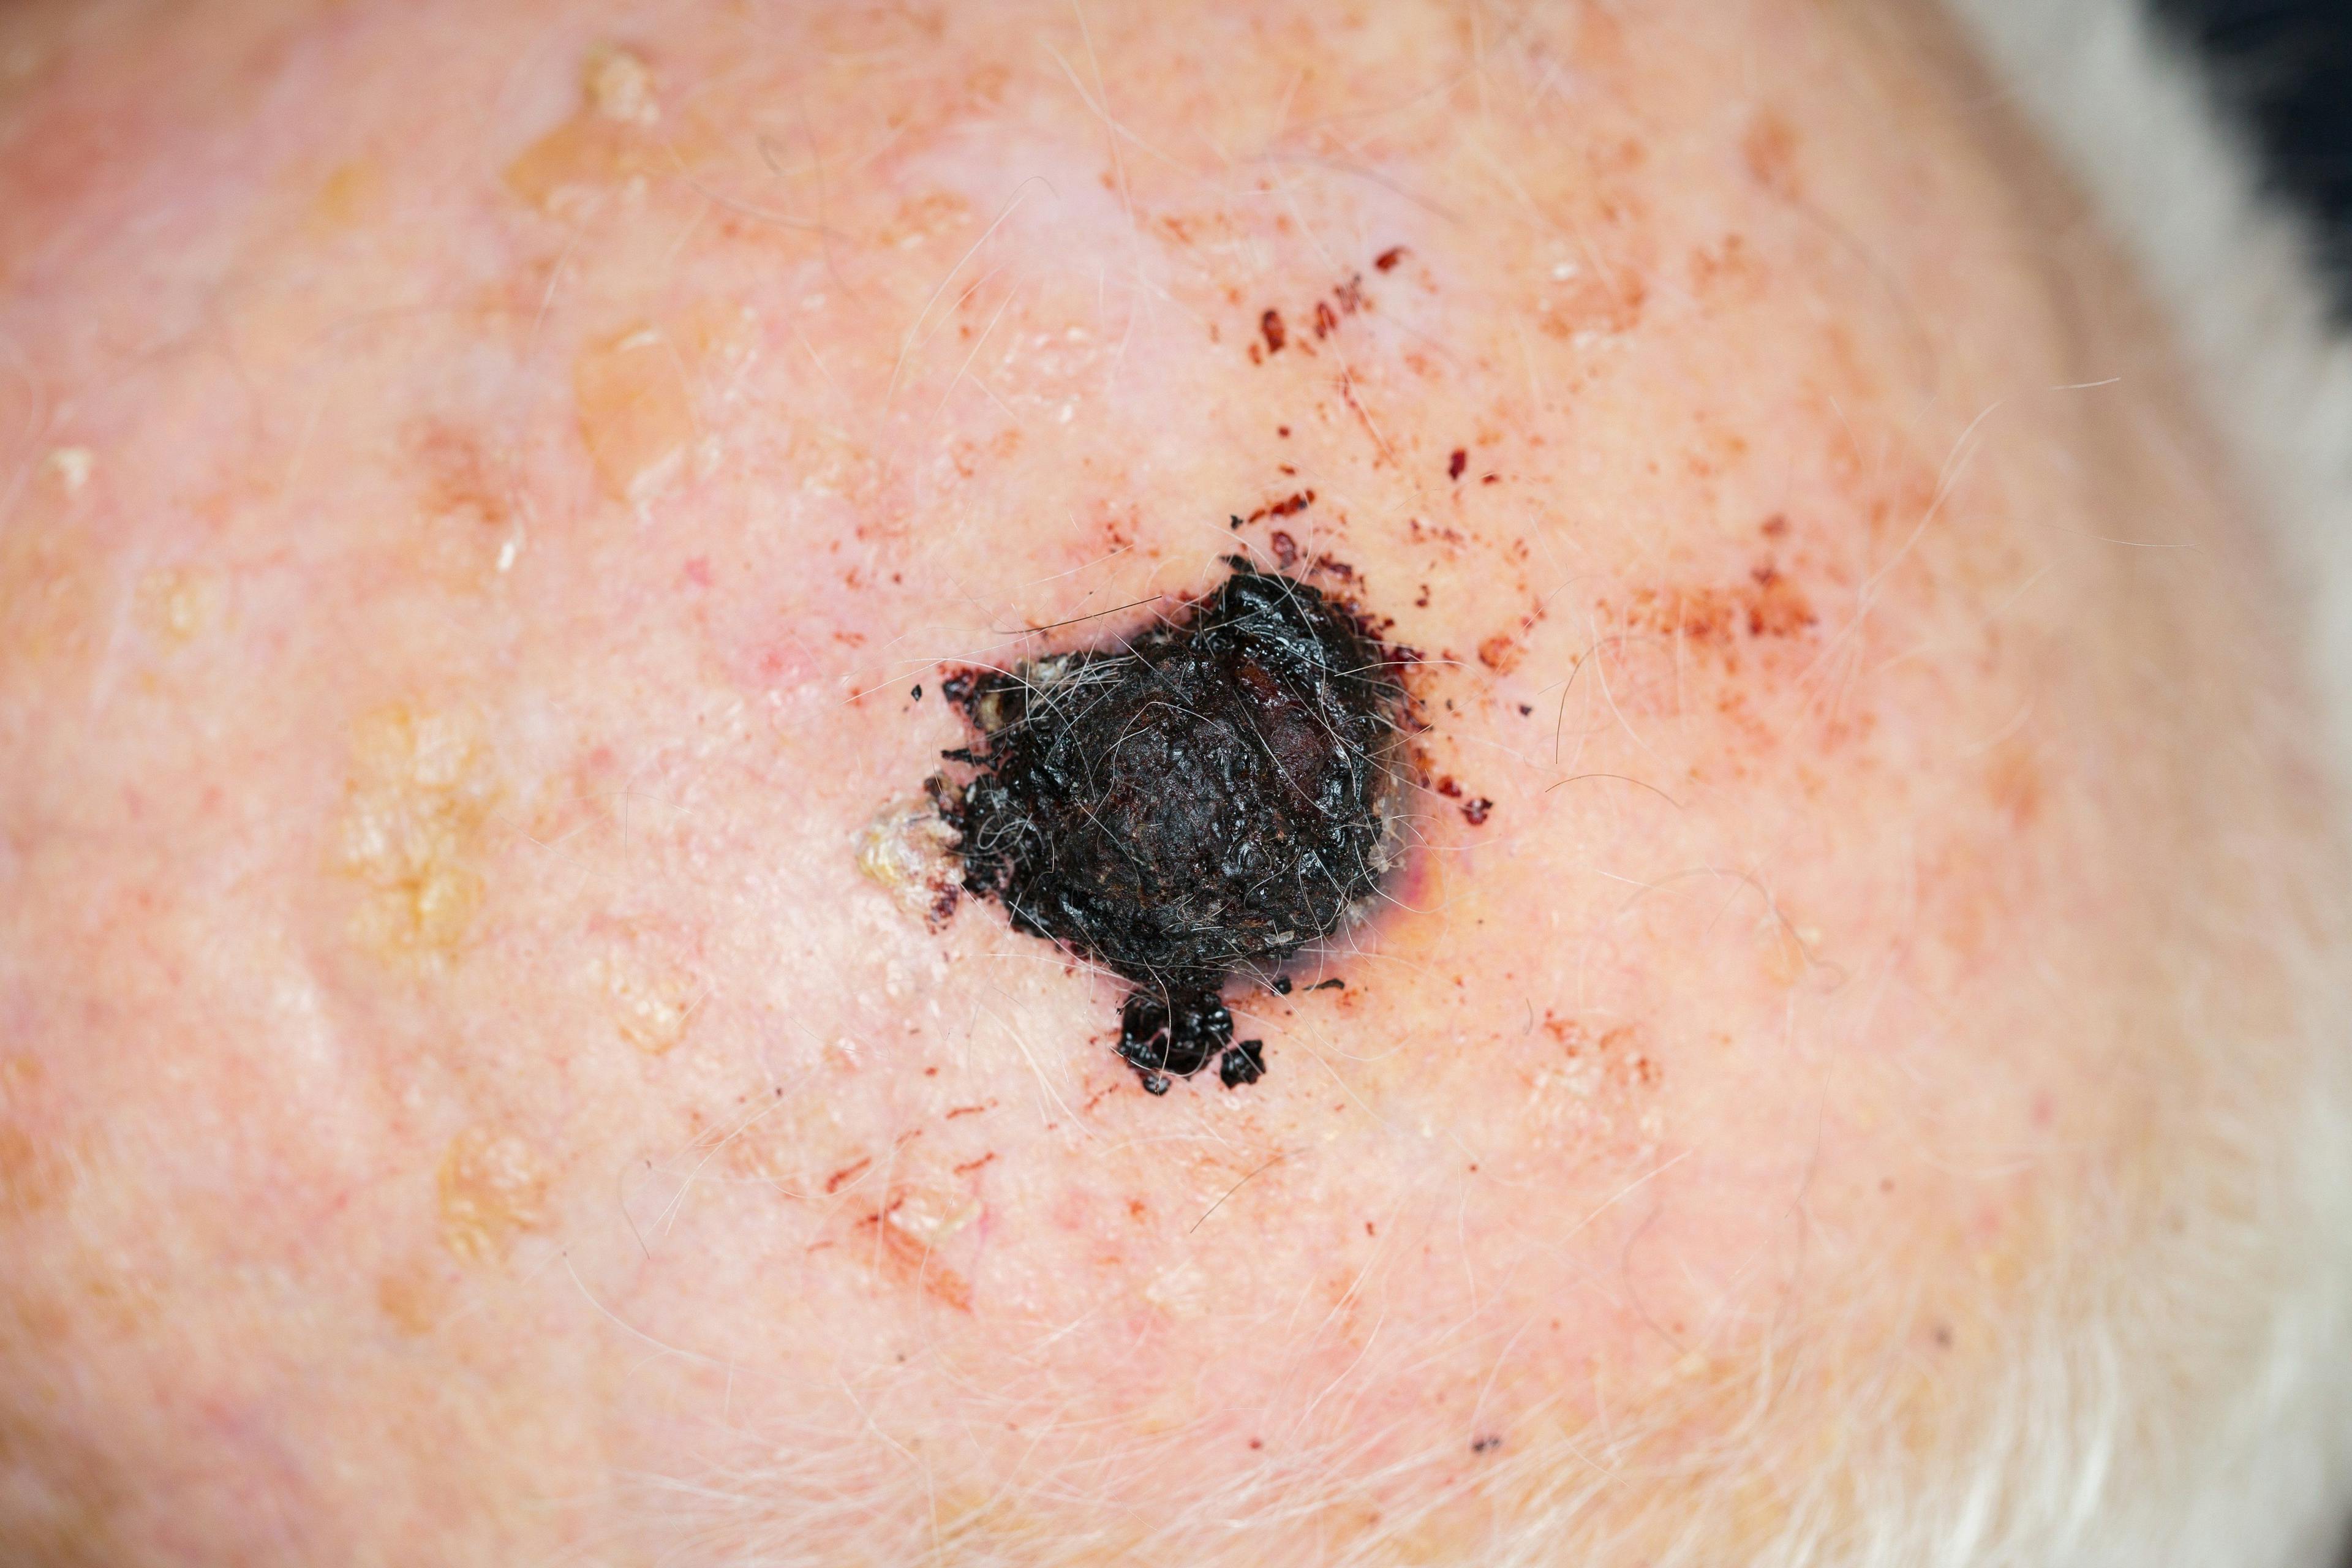 malignant melanoma on scalp